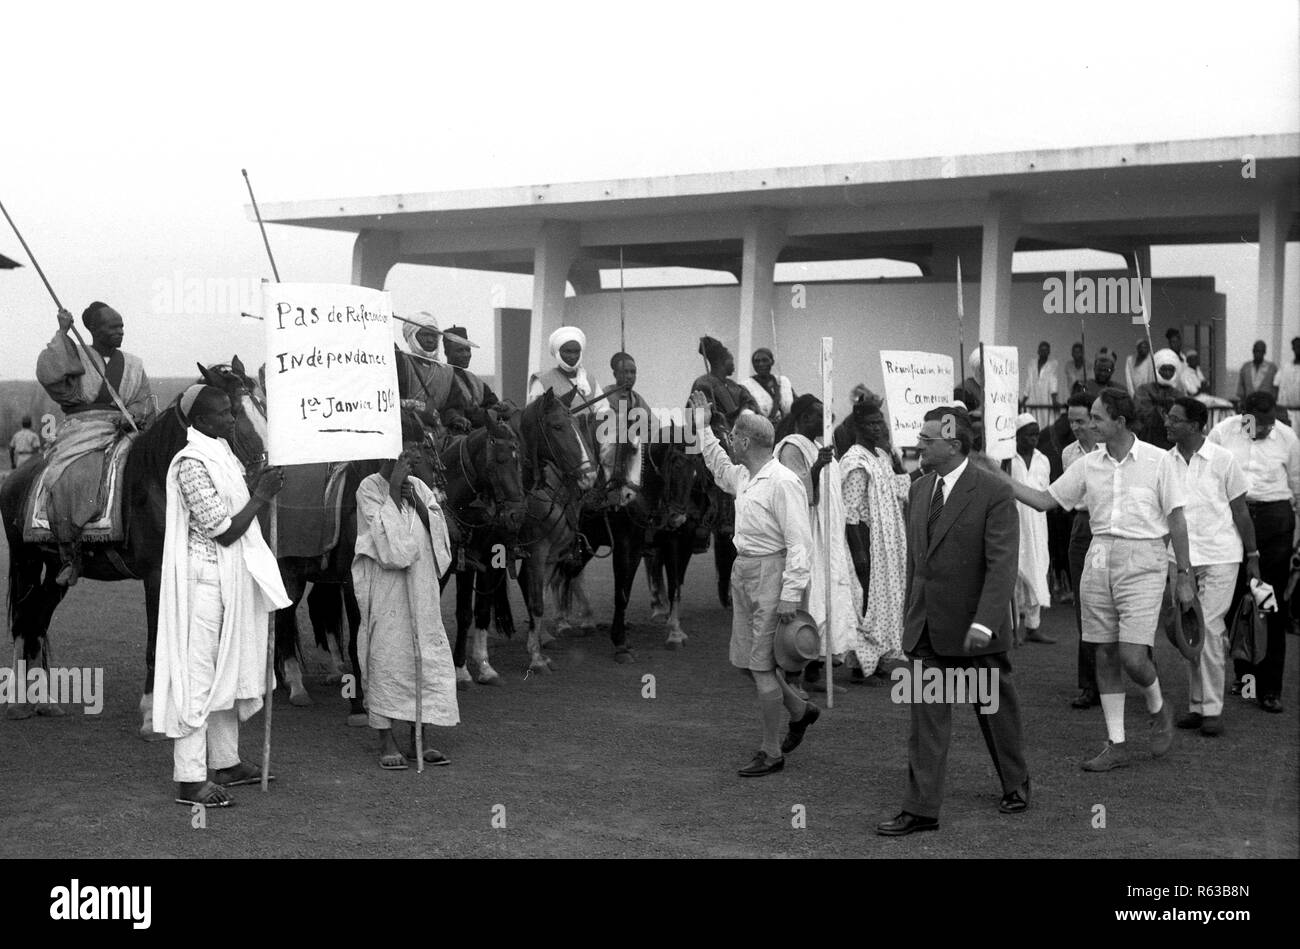 La tribu camerounaise salue les diplomates français à l'aéroport en Afrique Cameroun 1959 peu avant l'indépendance le 1er janvier 1960 Banque D'Images